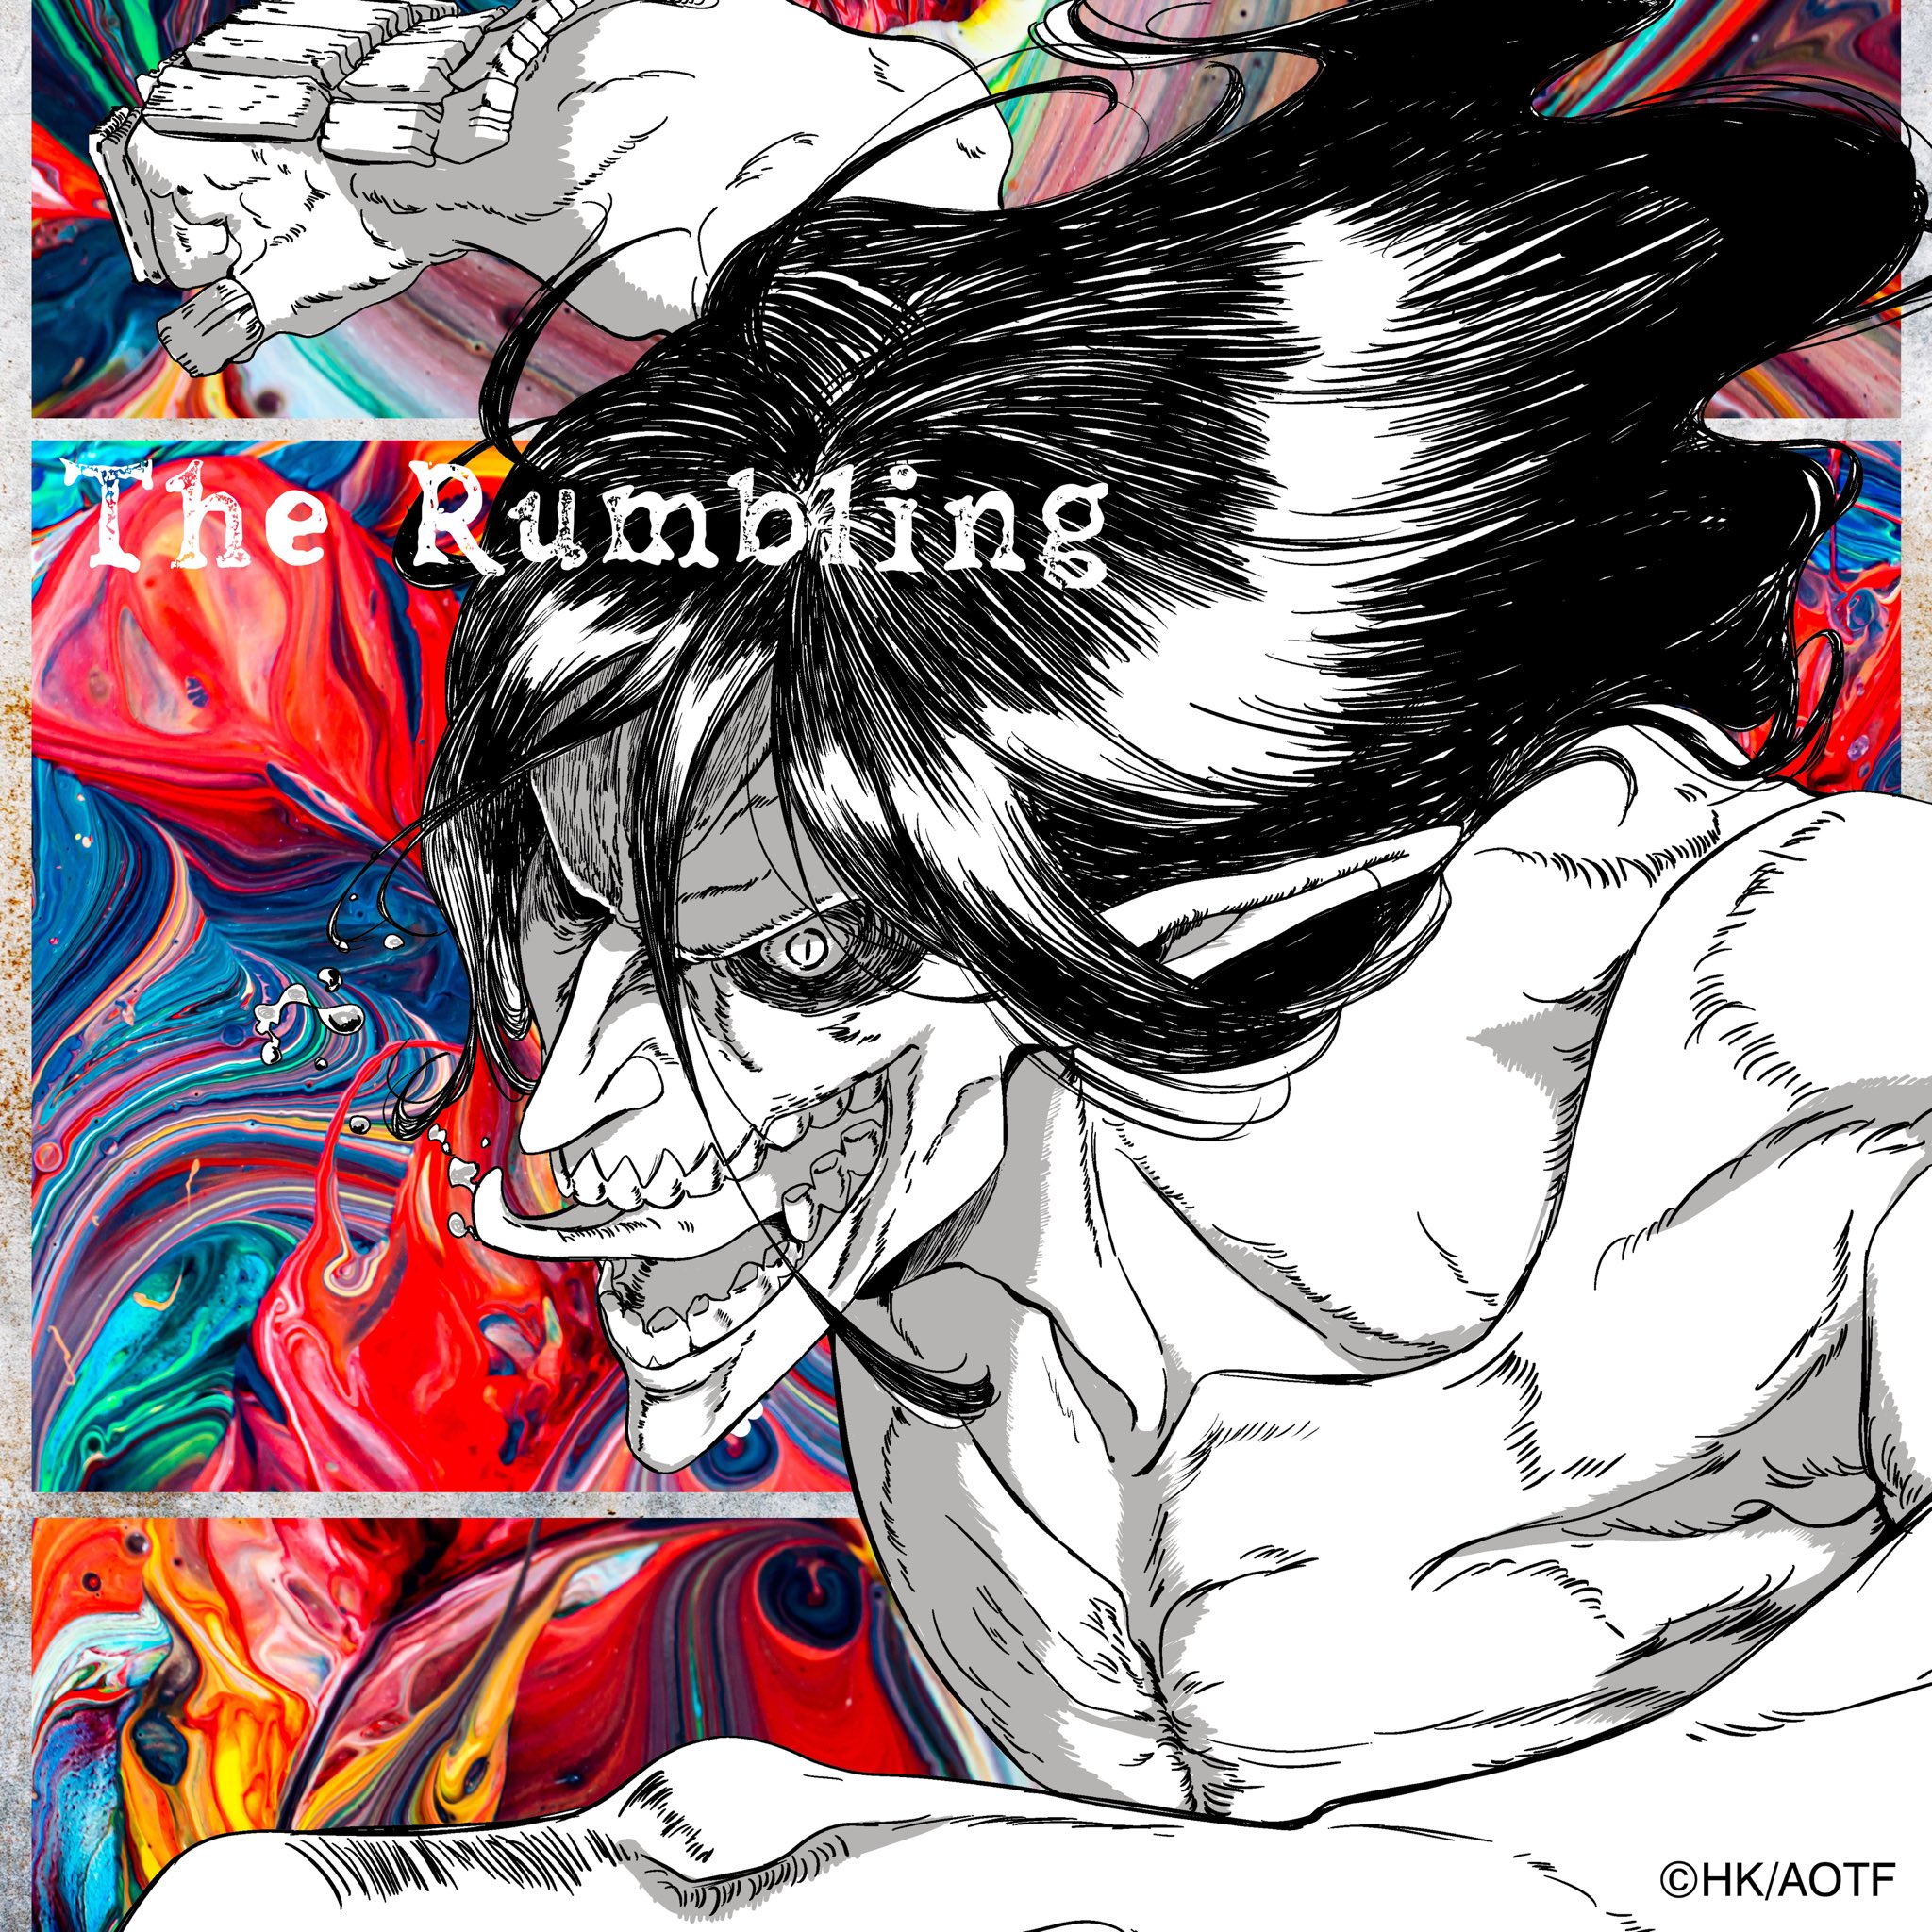 SiM - The Rumbling